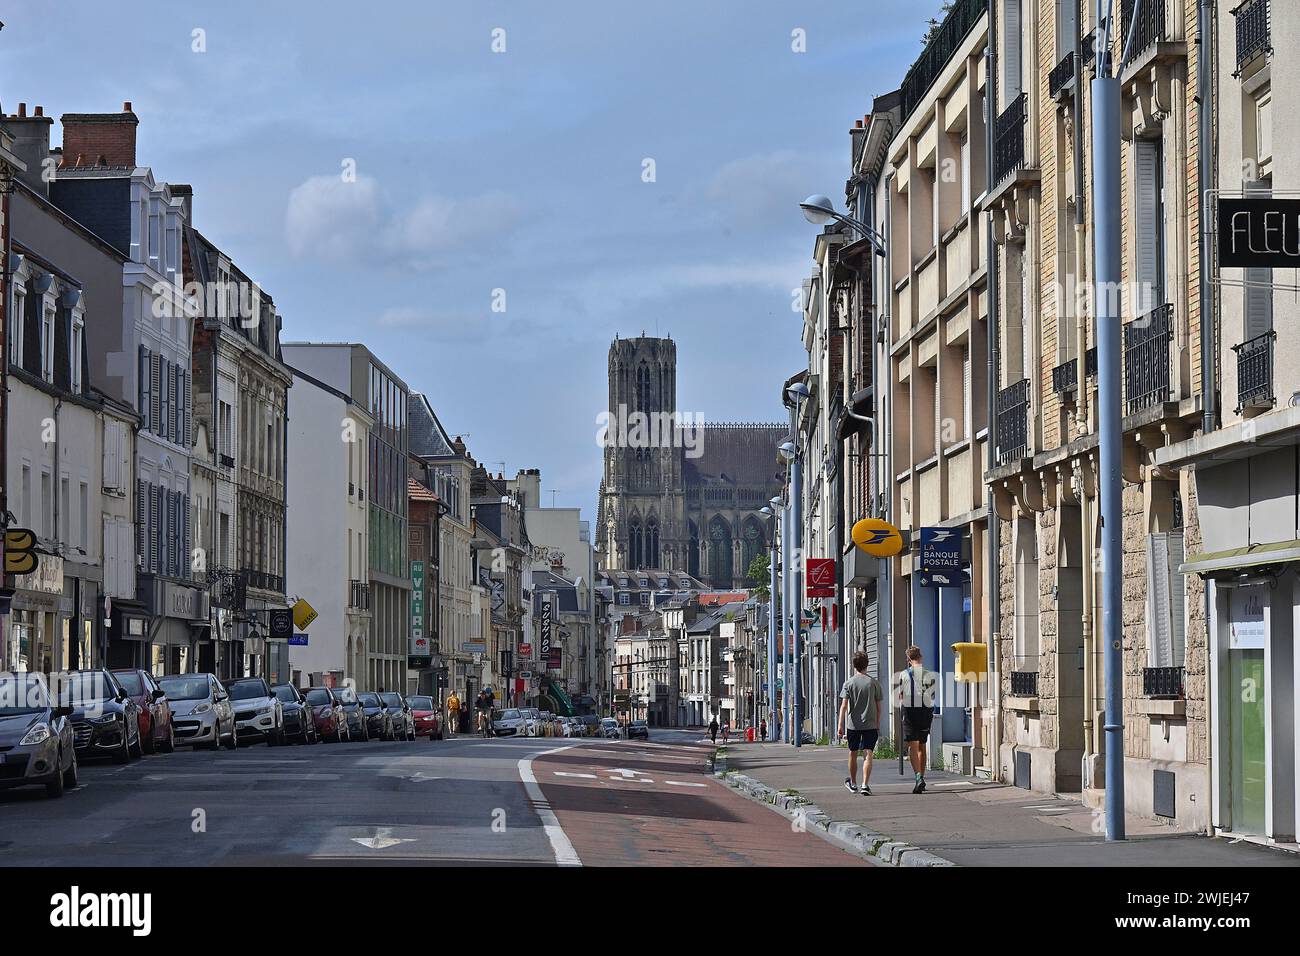 Reims (Francia nord-orientale): Via rue Gambetta nel distretto di Barbatre-Gambetta. Sullo sfondo, la cattedrale di Notre-Dame de Paris Foto Stock